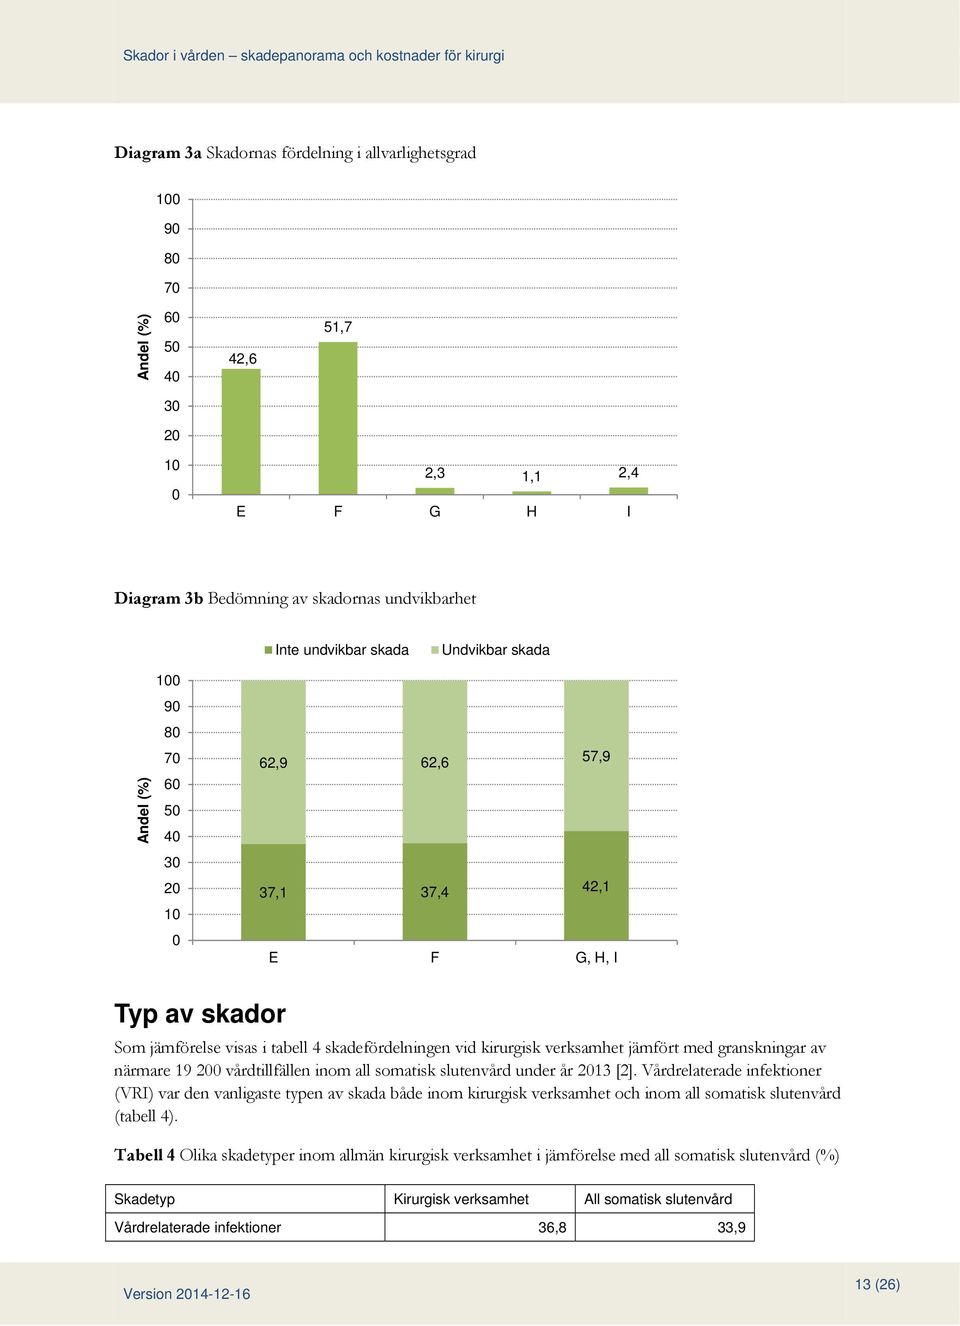 med granskningar av närmare 19 200 vårdtillfällen inom all somatisk slutenvård under år 2013 [2].